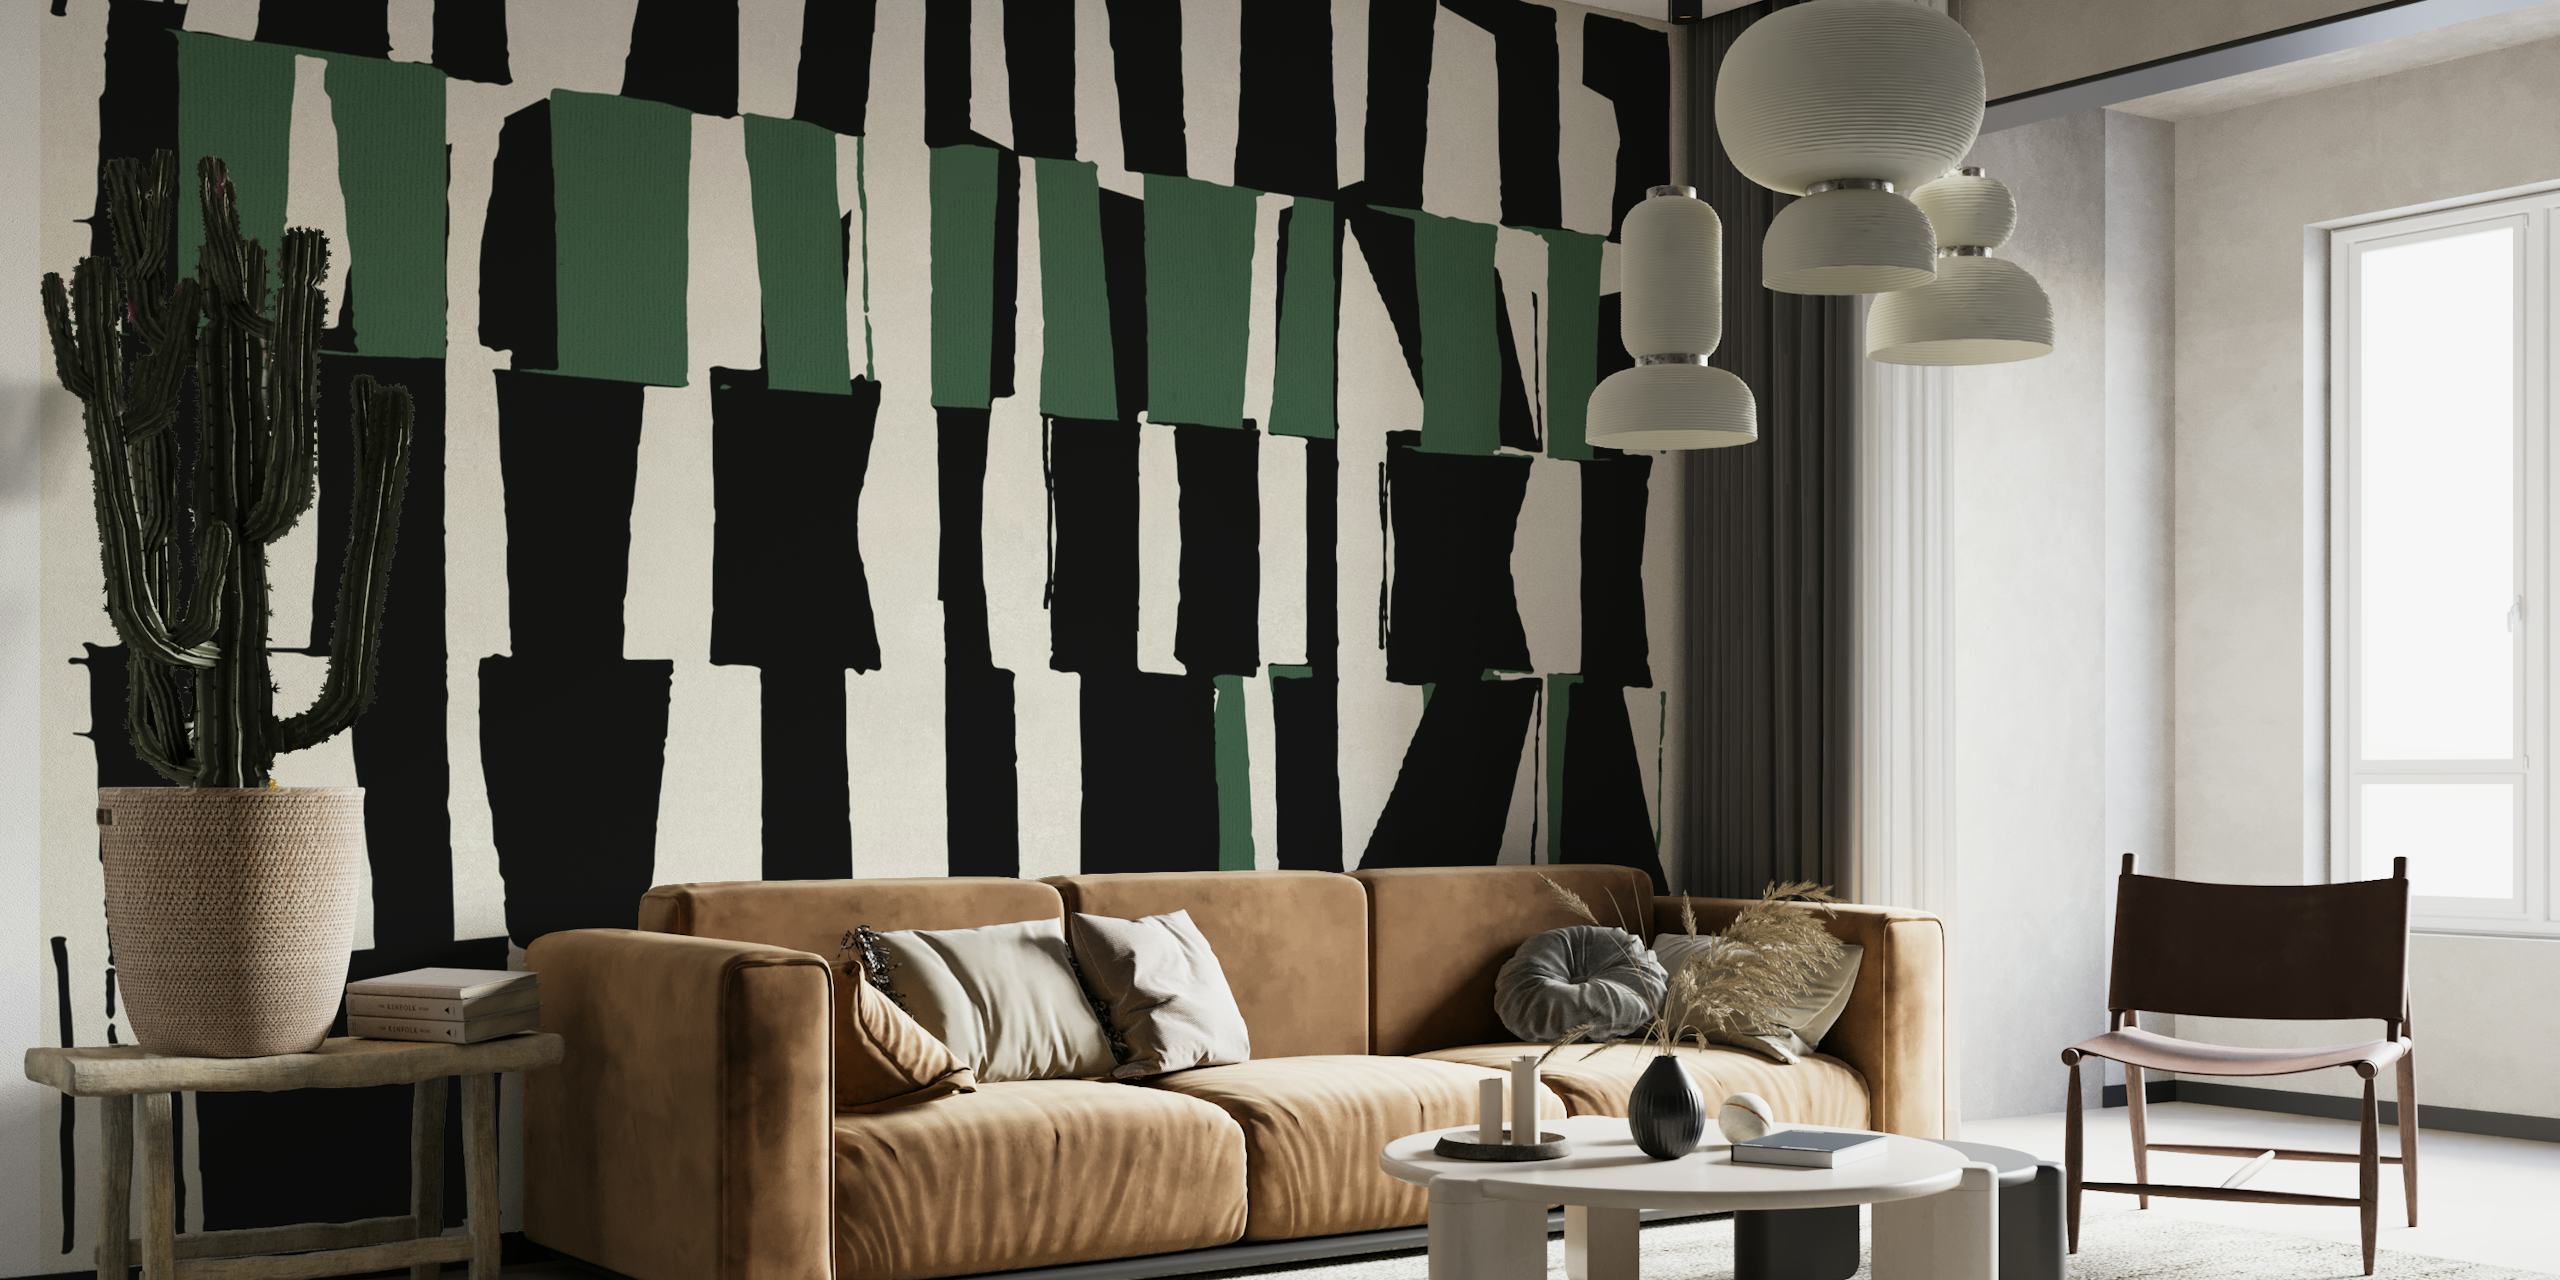 Modern Abstract Line 1 fotobehang met zwarte en groene lijnen op een witte achtergrond